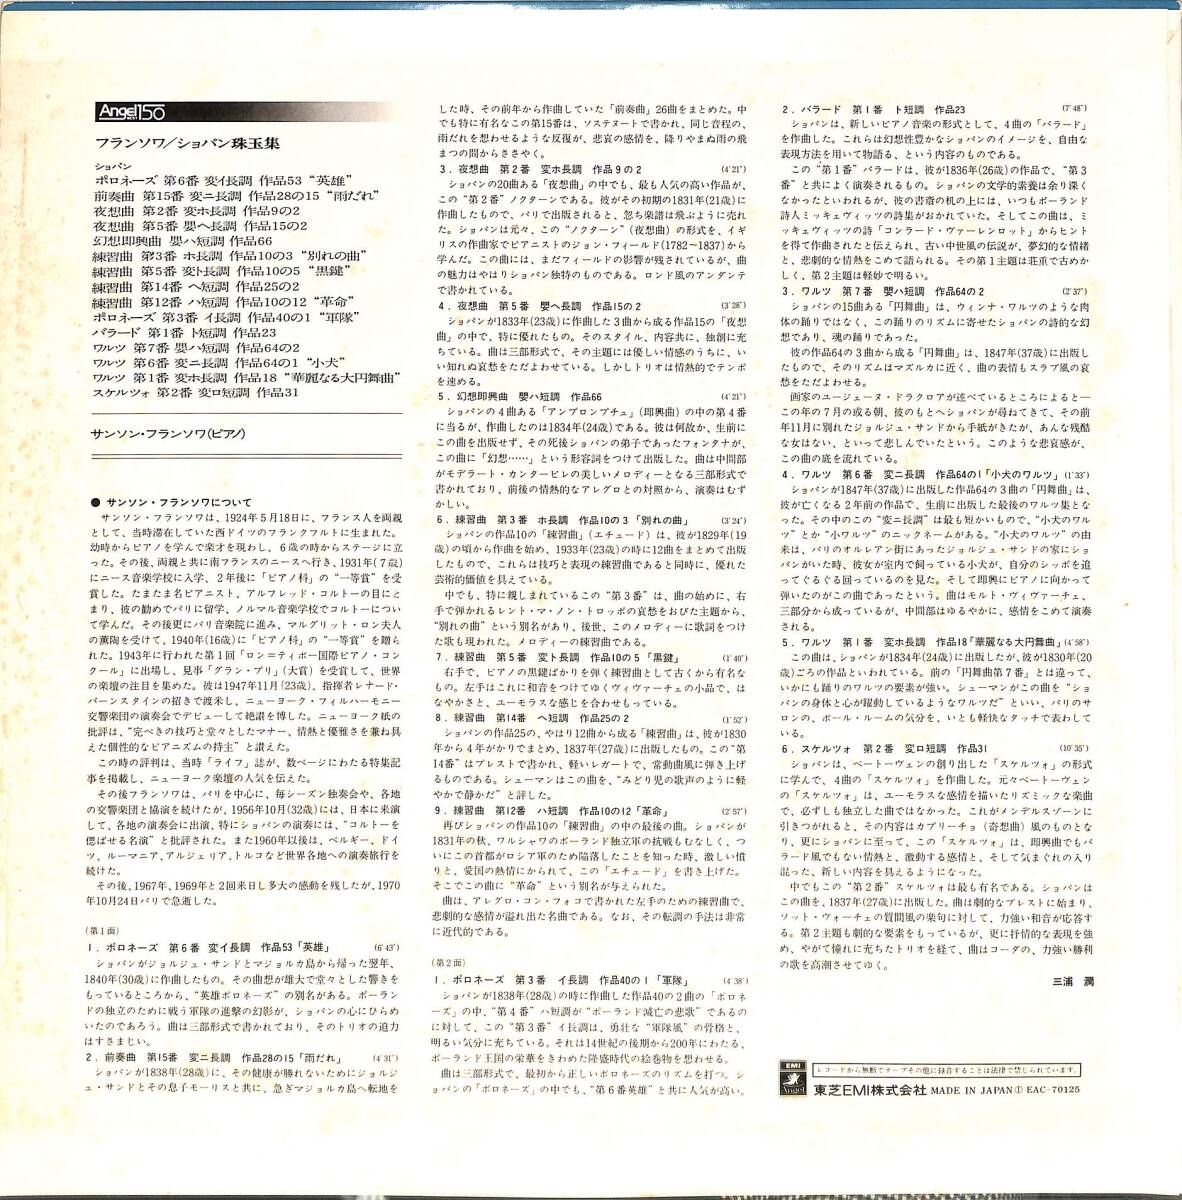 A00524140/LP/サンソン・フランソワ「ショパン珠玉集」の画像2